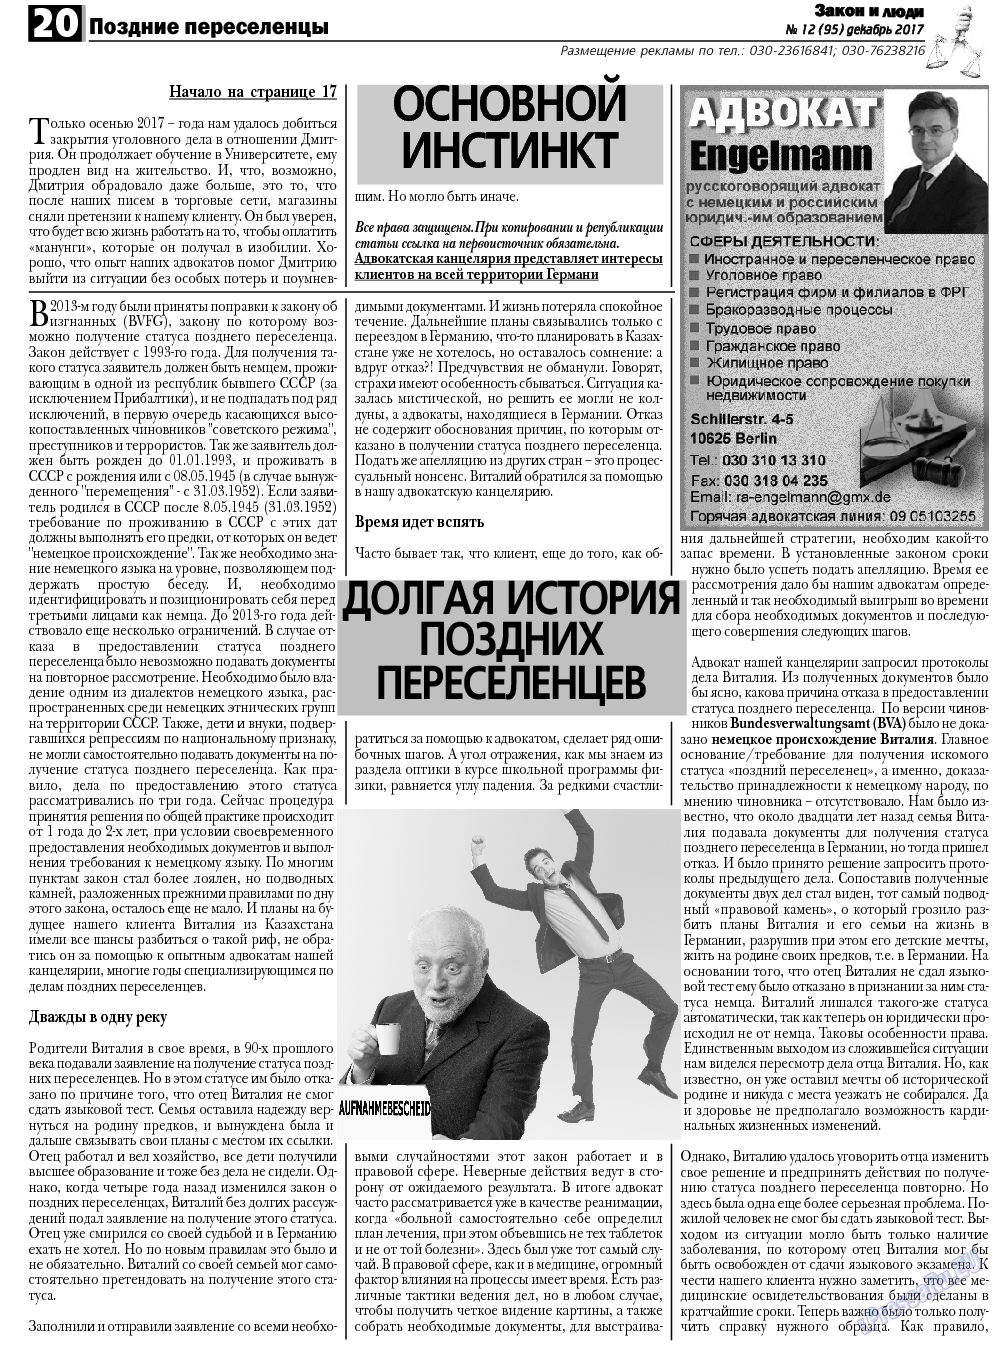 Закон и люди, газета. 2017 №12 стр.20